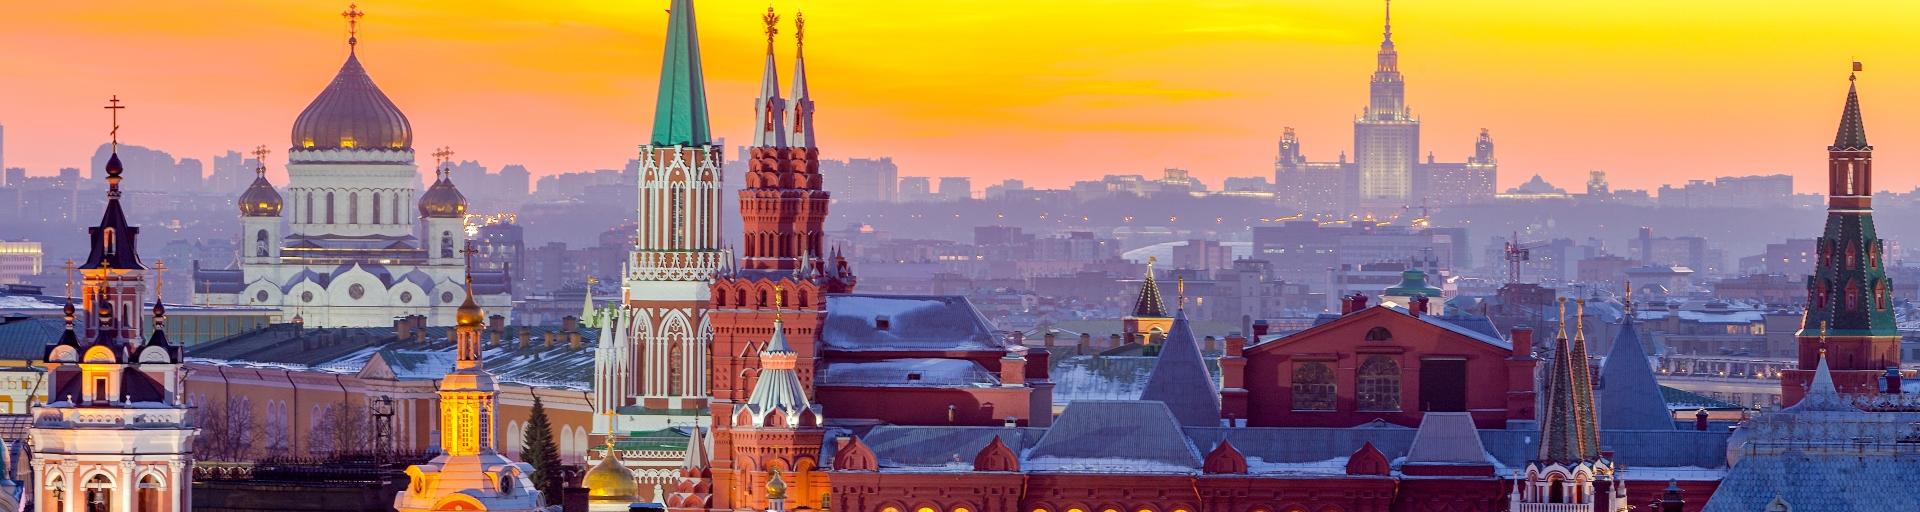 Детская экскурсия «Загадки башен Московского Кремля» со скидкой 20%